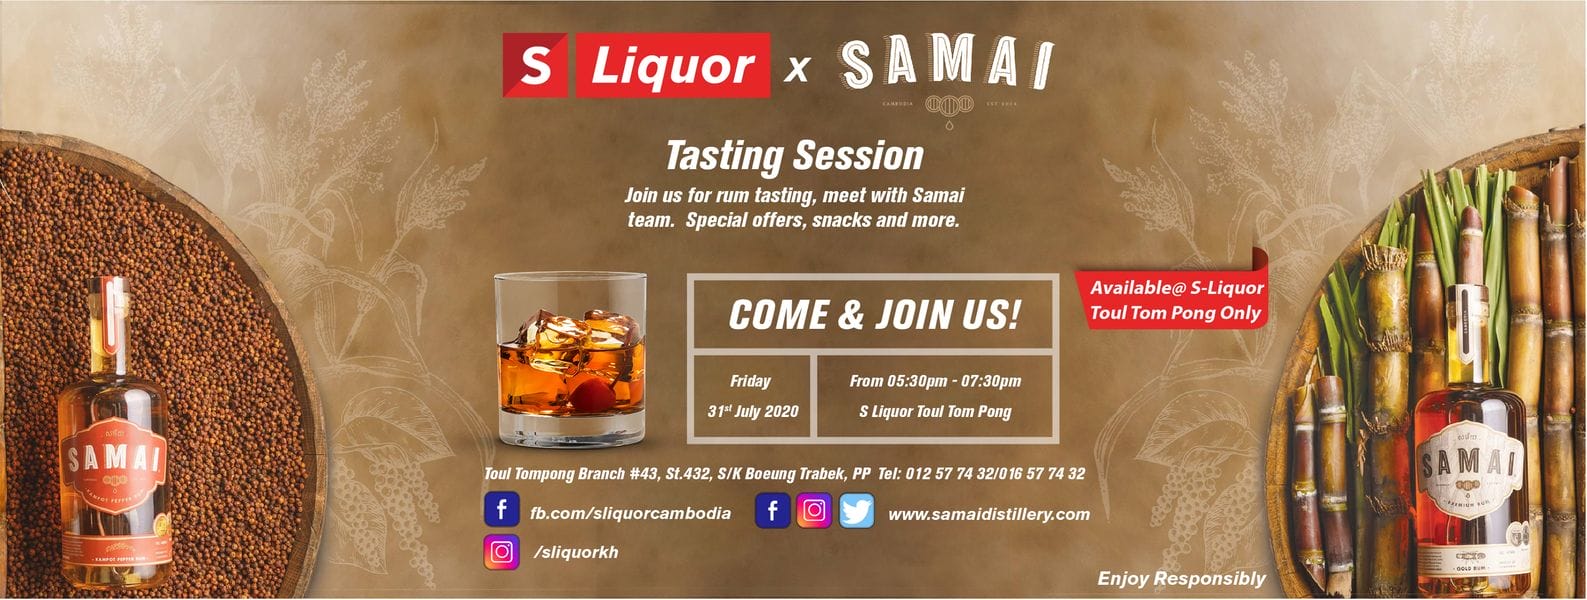 Samai Rum Tasting Session - S Liquor